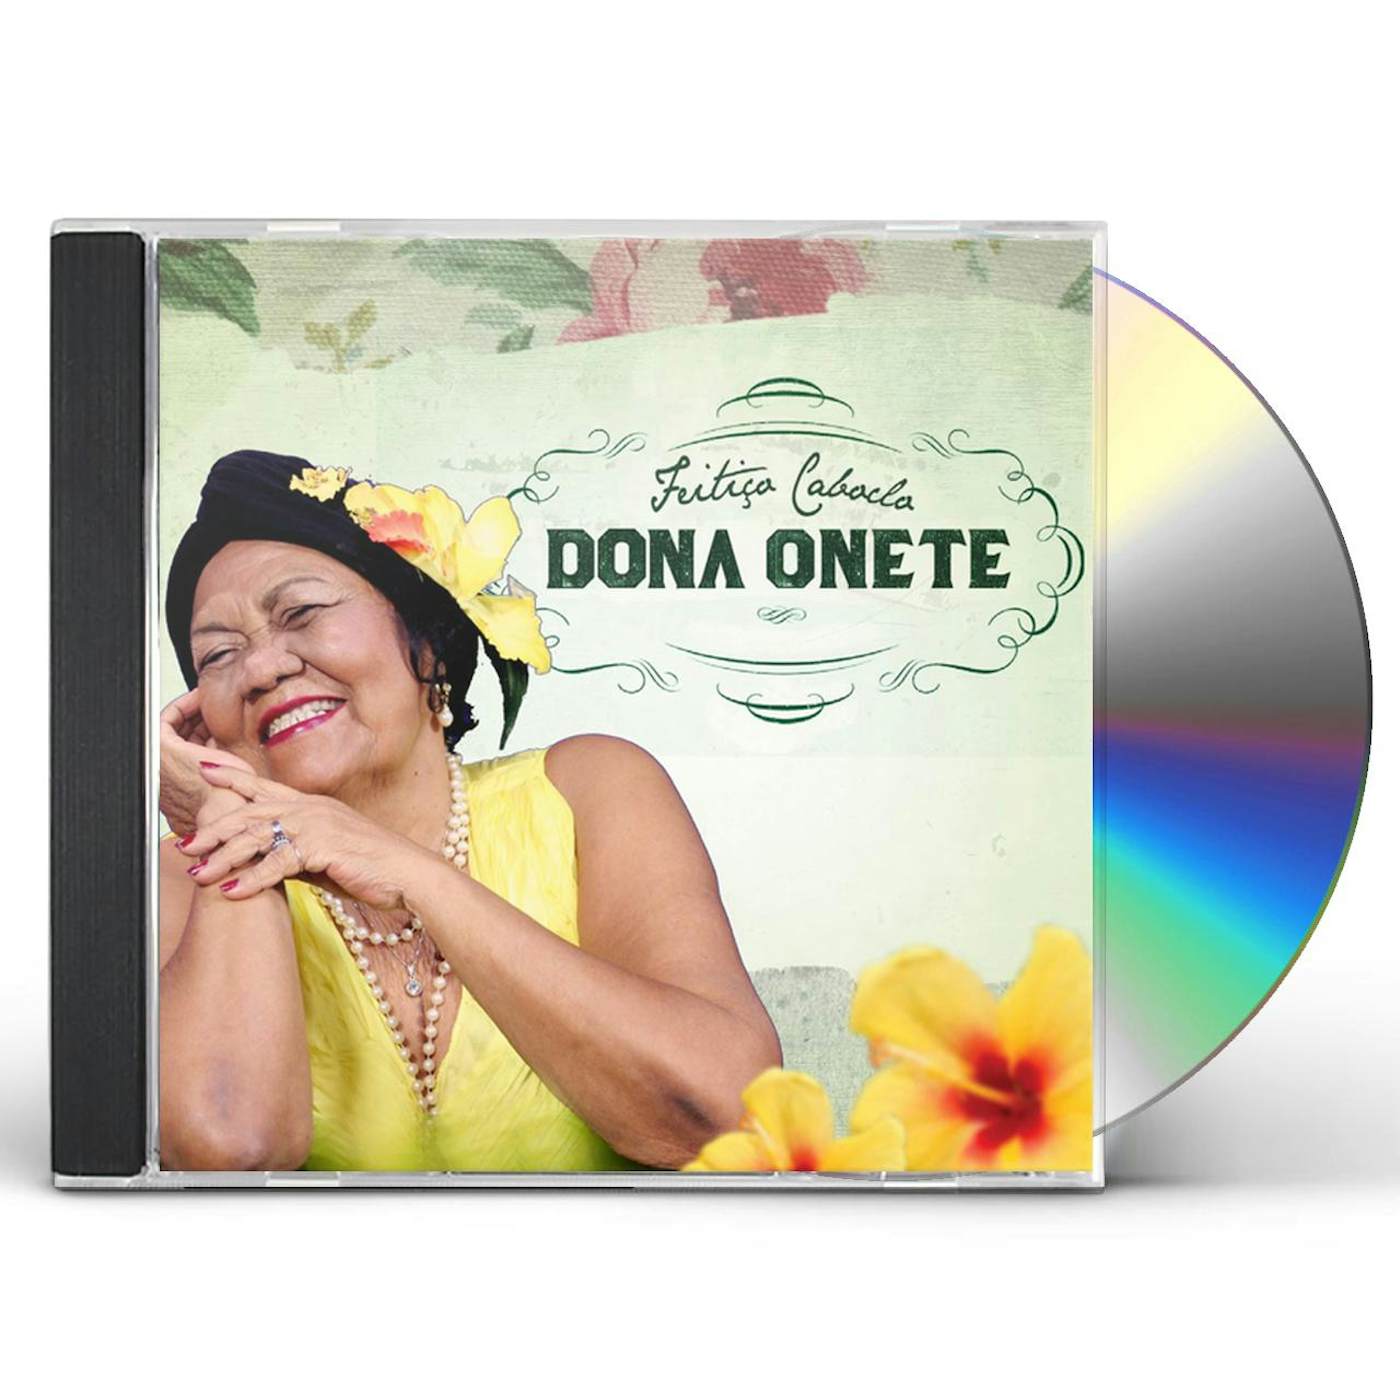 Dona Onete FEITICO CABLOCO CD